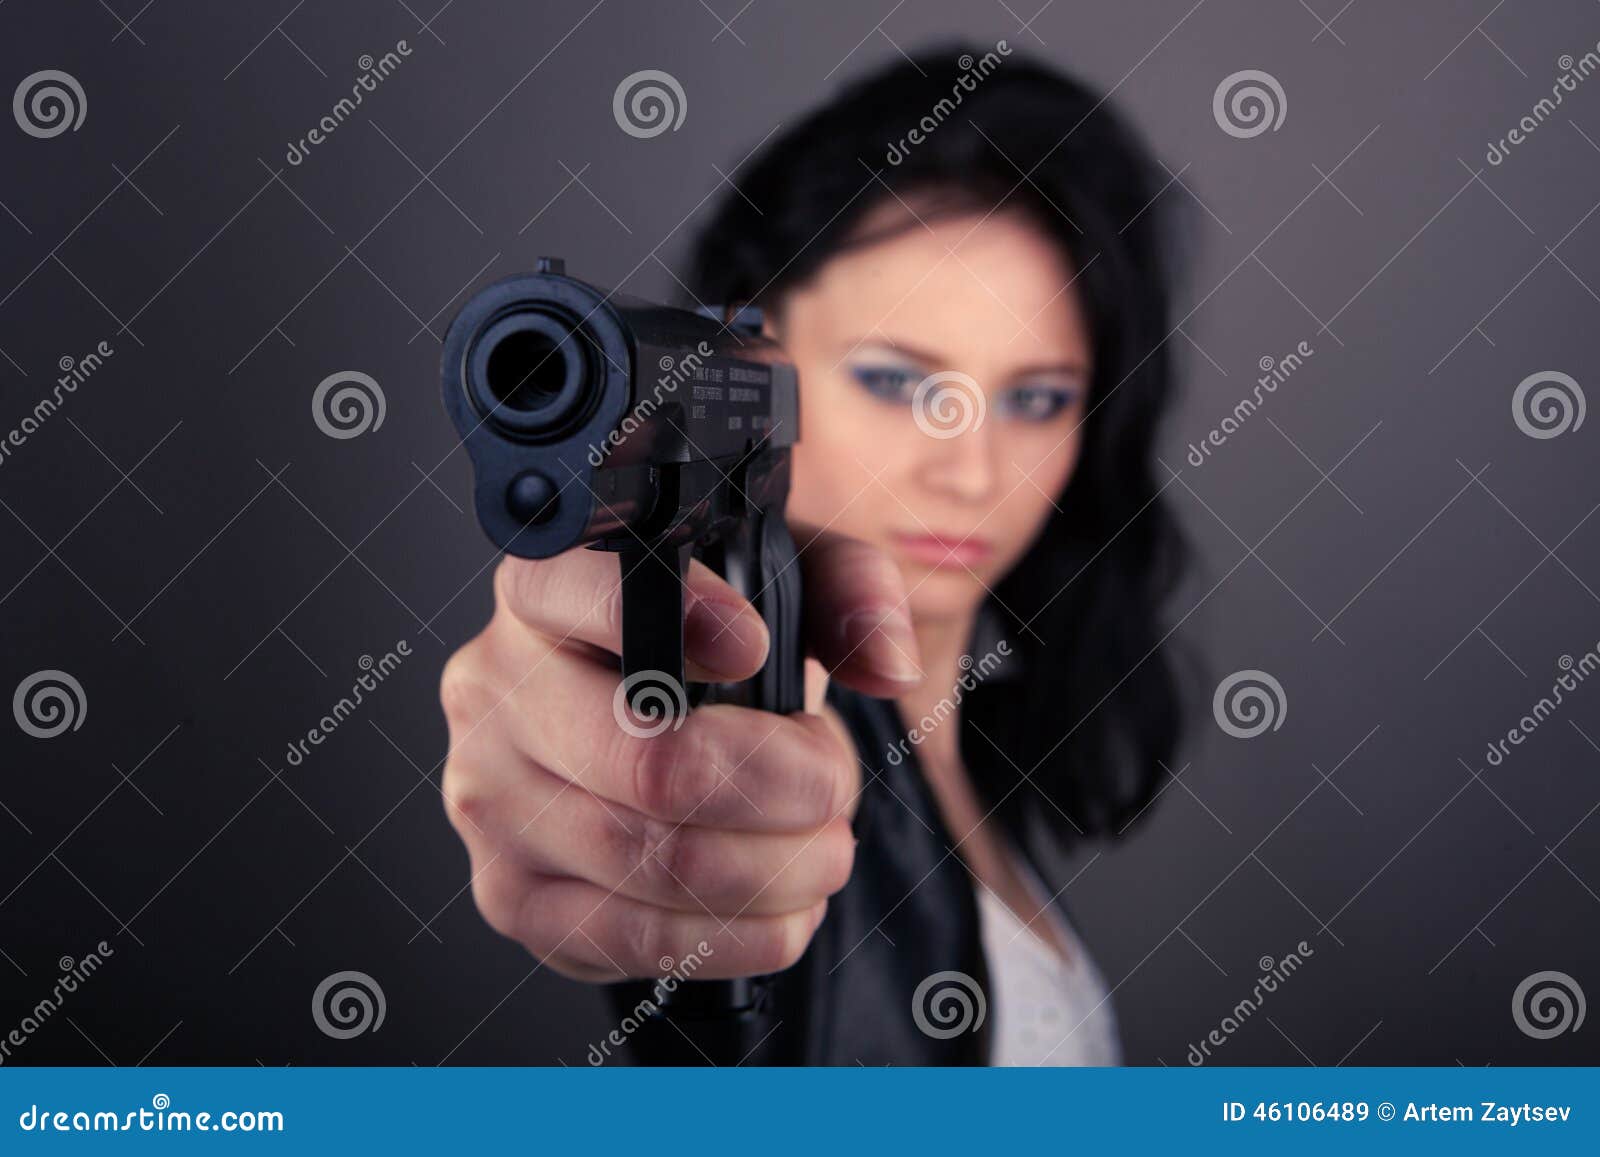 Девушке угрожают пистолетом. Женская рука с пистолетом. Женщина с пистолетом. Девушки с пистолетом в руках.